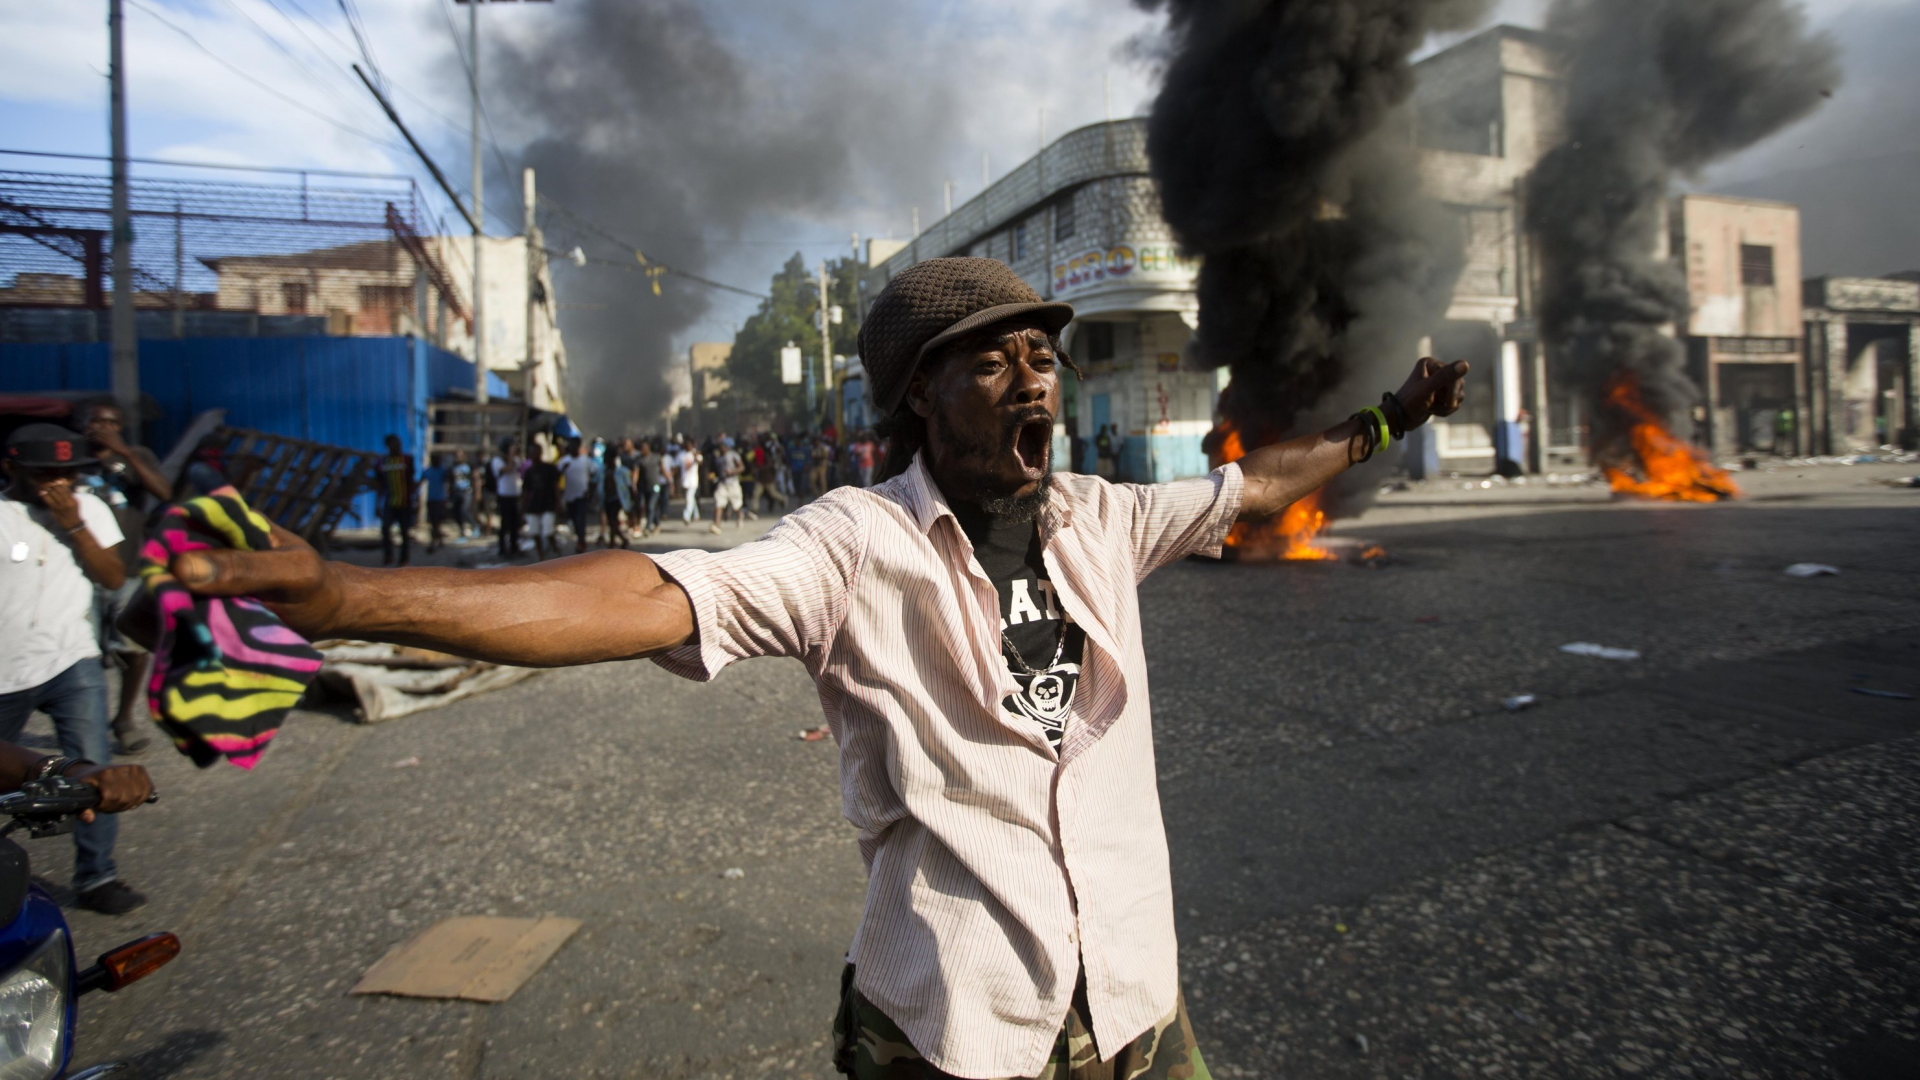 Ein Demonstrant ruft Parolen gegen die haitianische Regierung. Im Hintergrund stehen brennende Barrikaden. | Bildquelle: AP